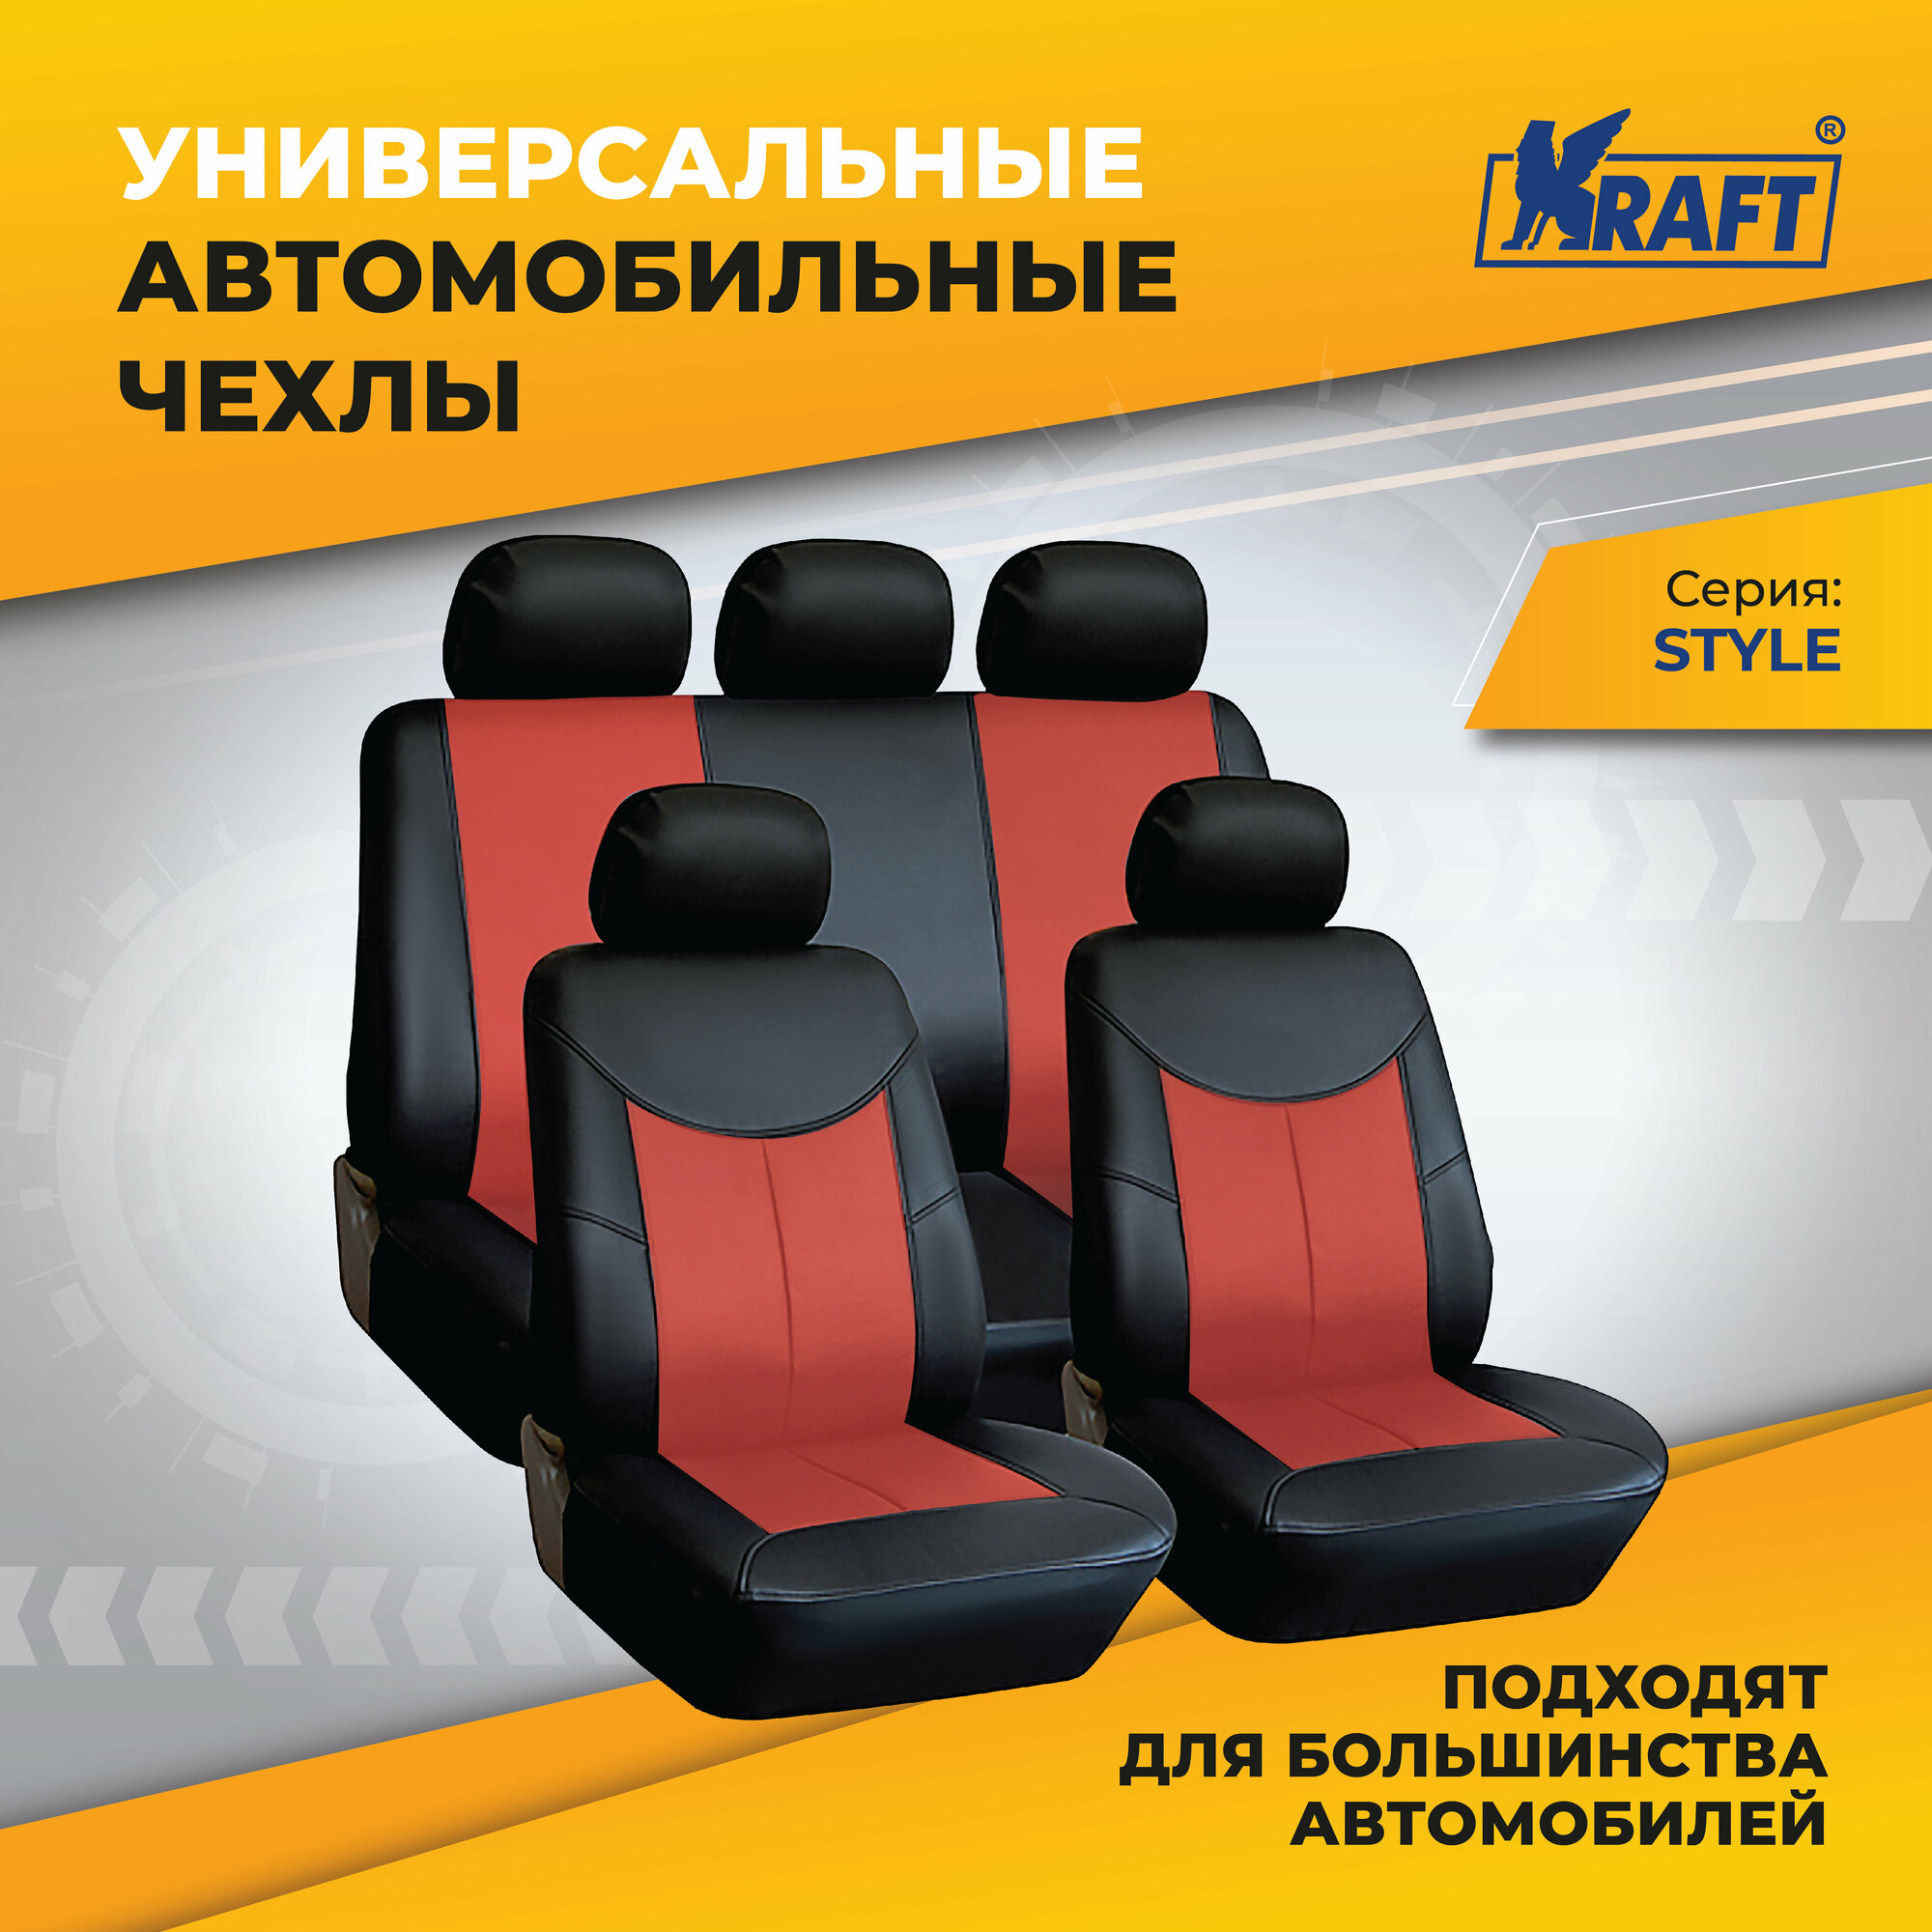 Чехлы универсальные на автомобильные сиденья, комплект "STYLE", экокожа, черно-красные